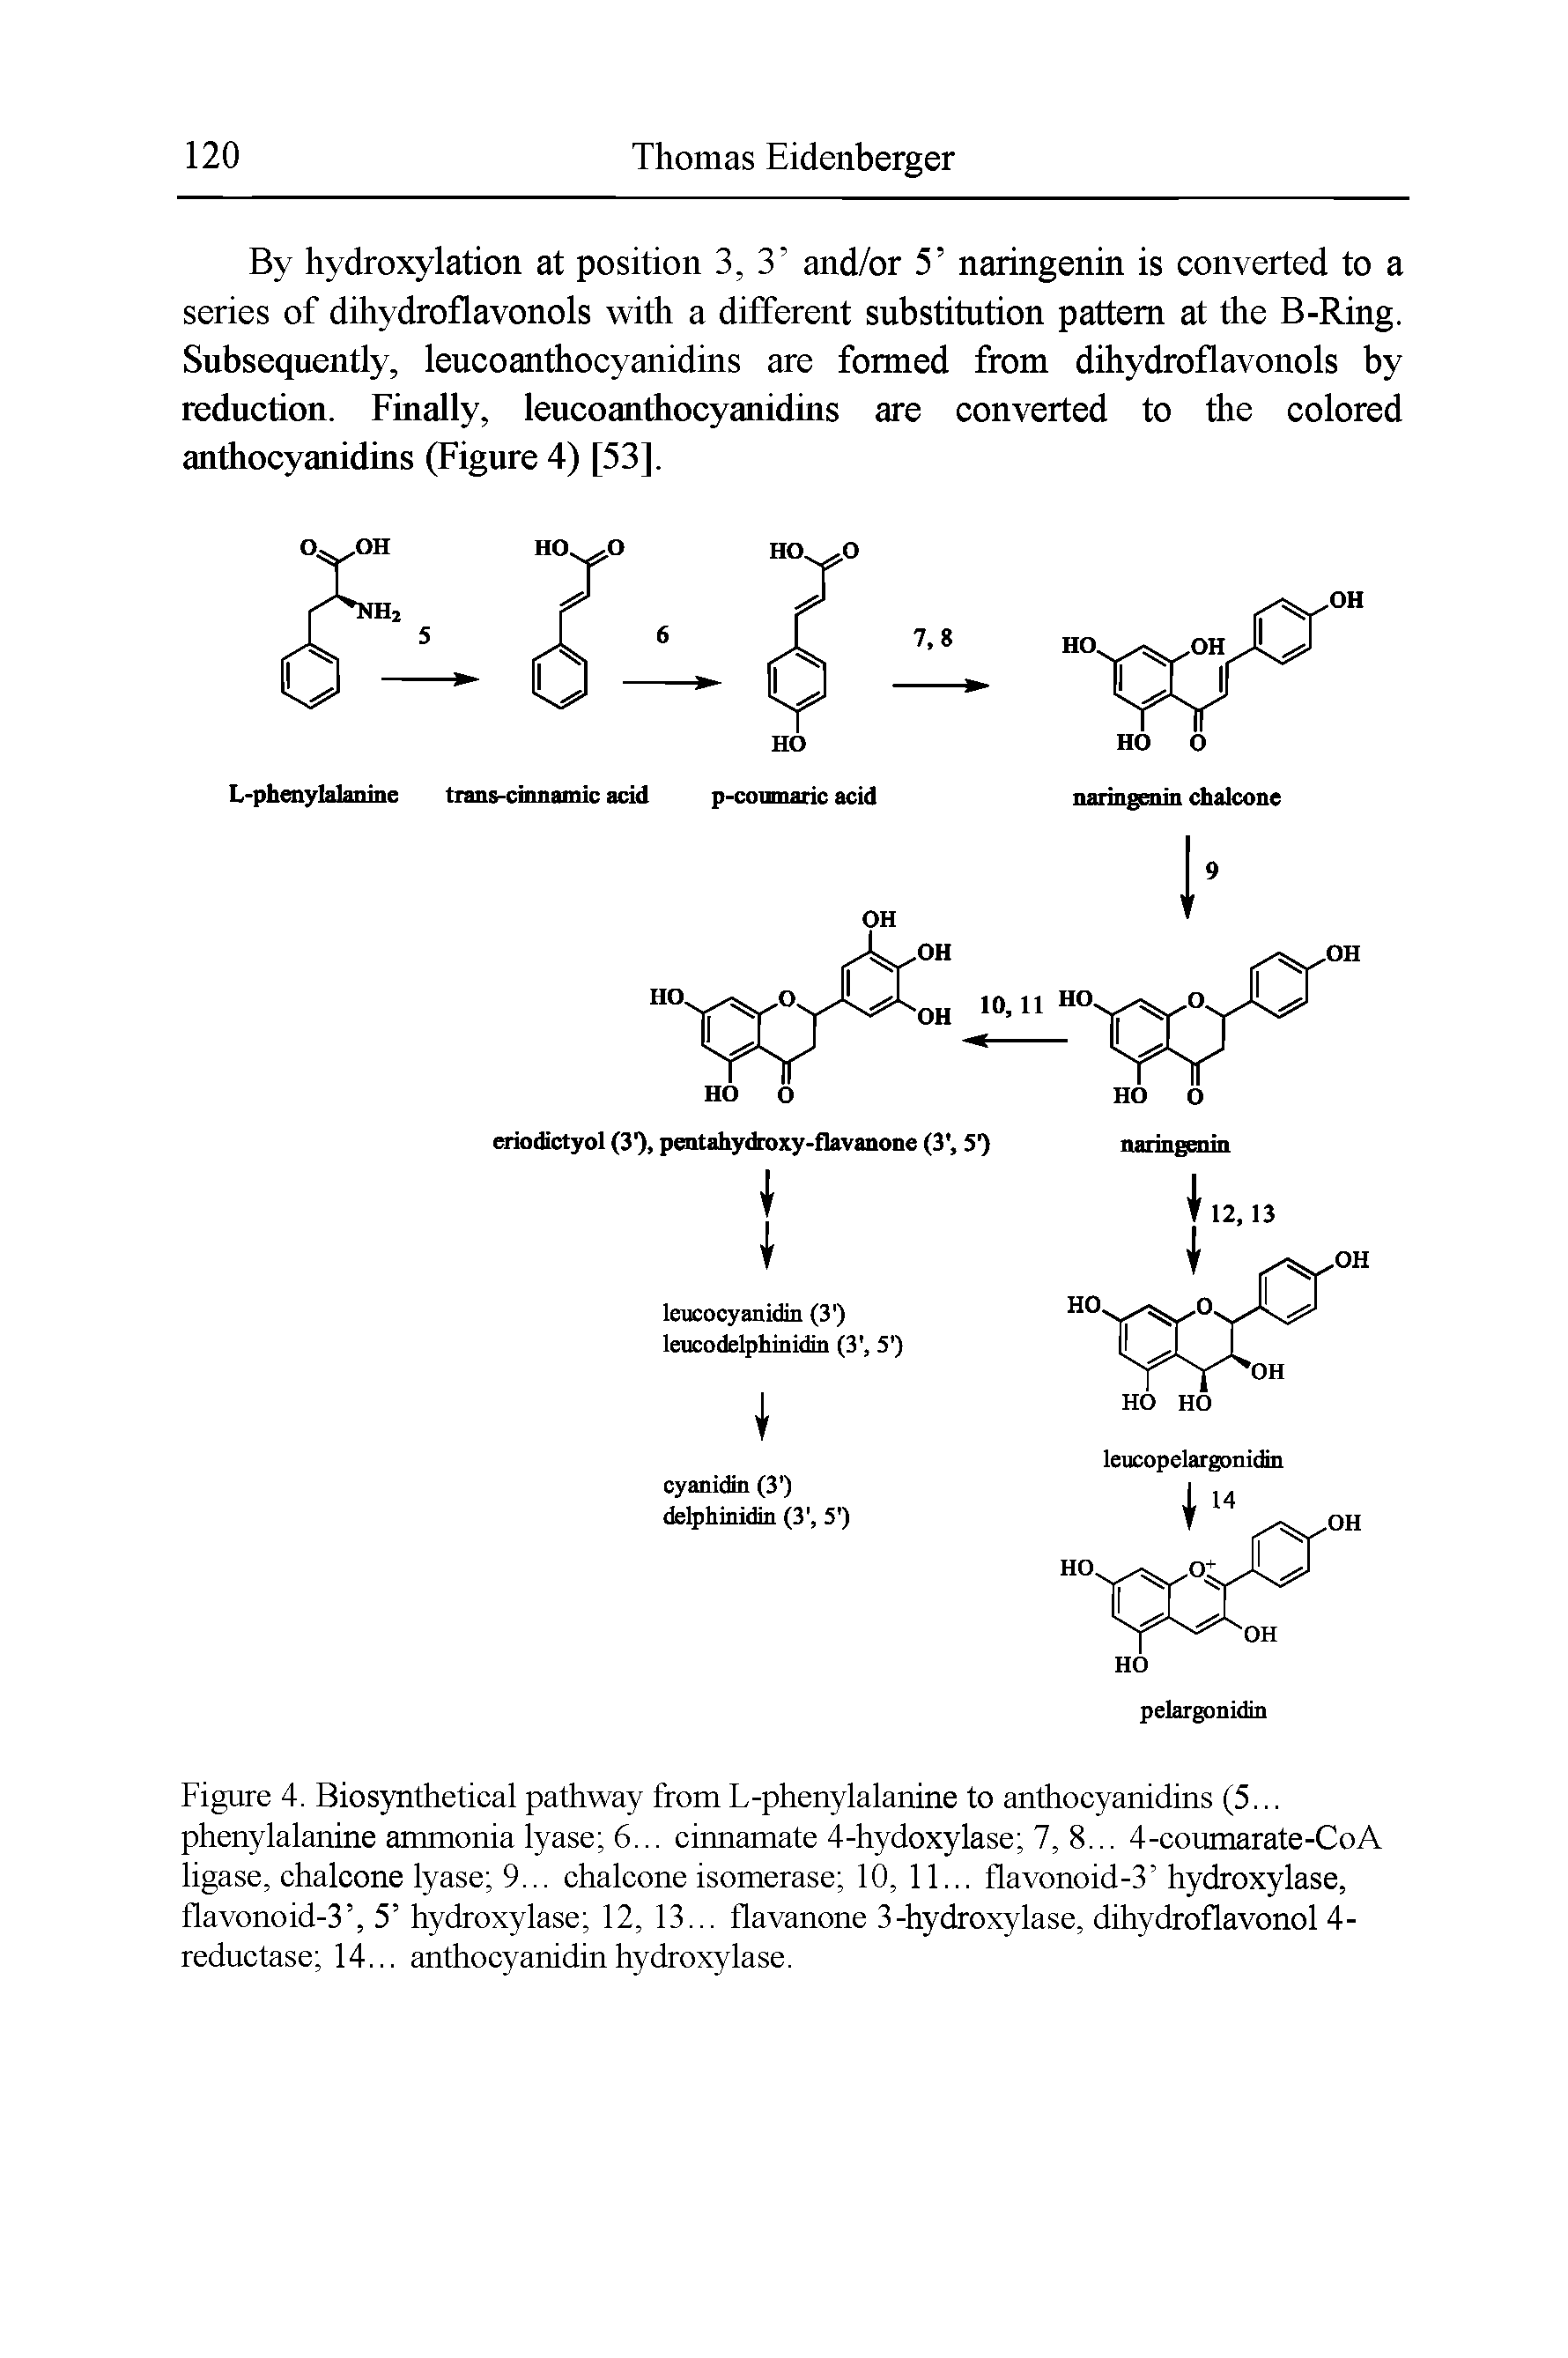 Figure 4. Biosynthetical pathway from L-phenylalanine to anthocyanidins (5... phenylalanine ammonia lyase 6... cinnamate 4-hydoxylase 7, 8... 4-coumarate-CoA ligase, chalcone lyase 9... chalcone isomerase 10, 11... flavonoid-3 hydroxylase, flavonoid-3 , 5 hydroxylase 12, 13... flavanone 3-hydroxylase, dihydroflavonol 4-reductase 14... anthocyanidinhydroxylase.